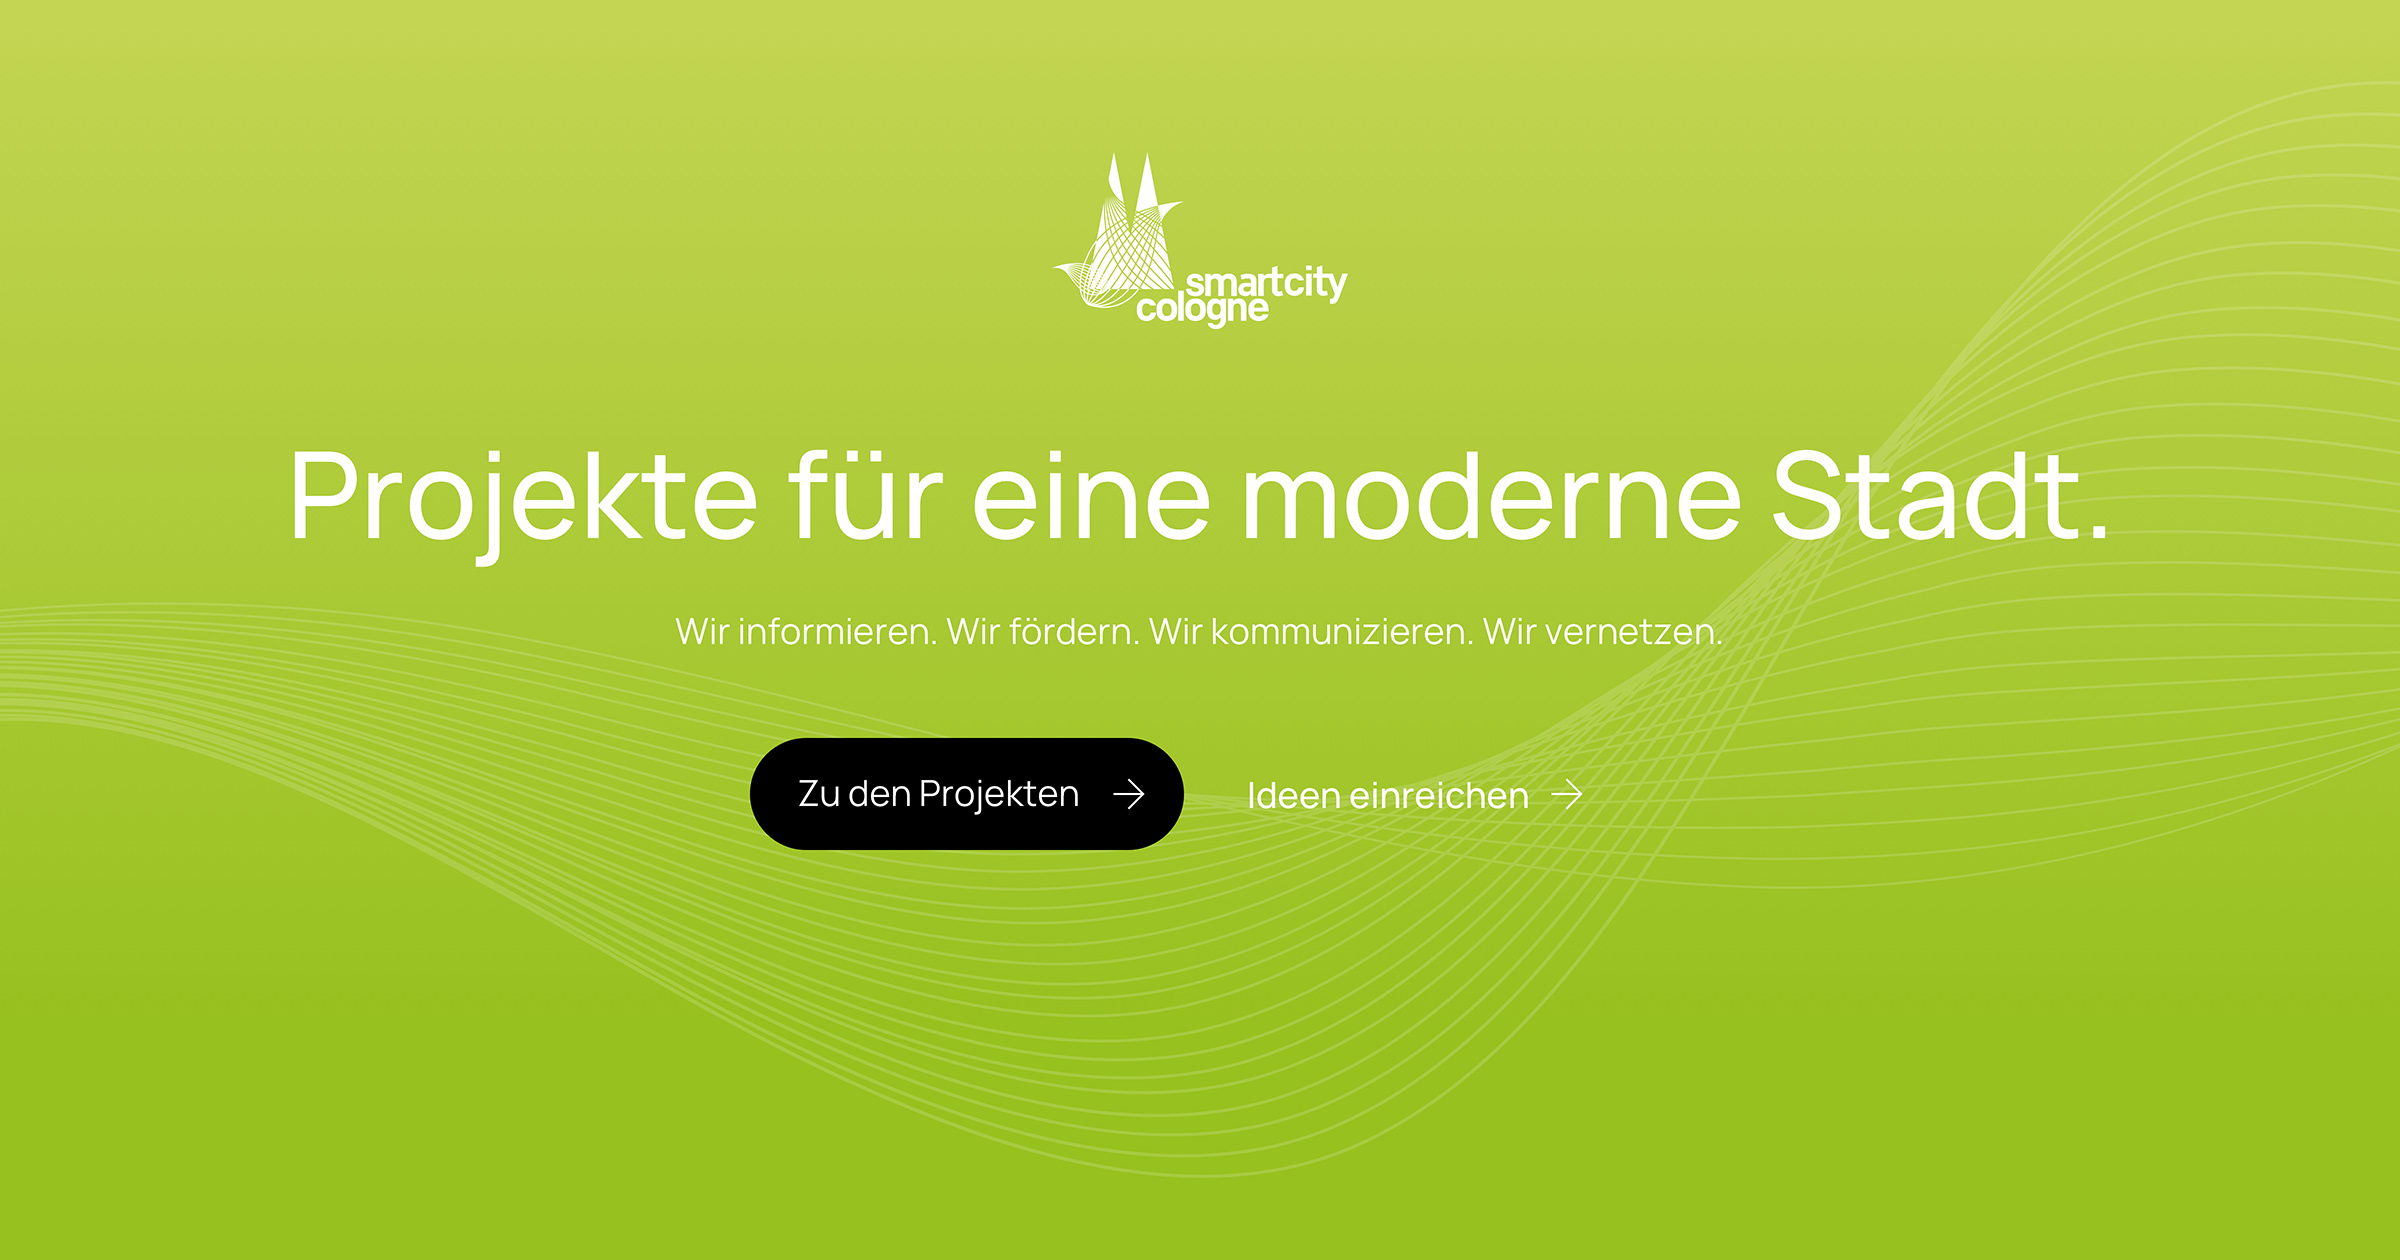 (c) Smartcity-cologne.de